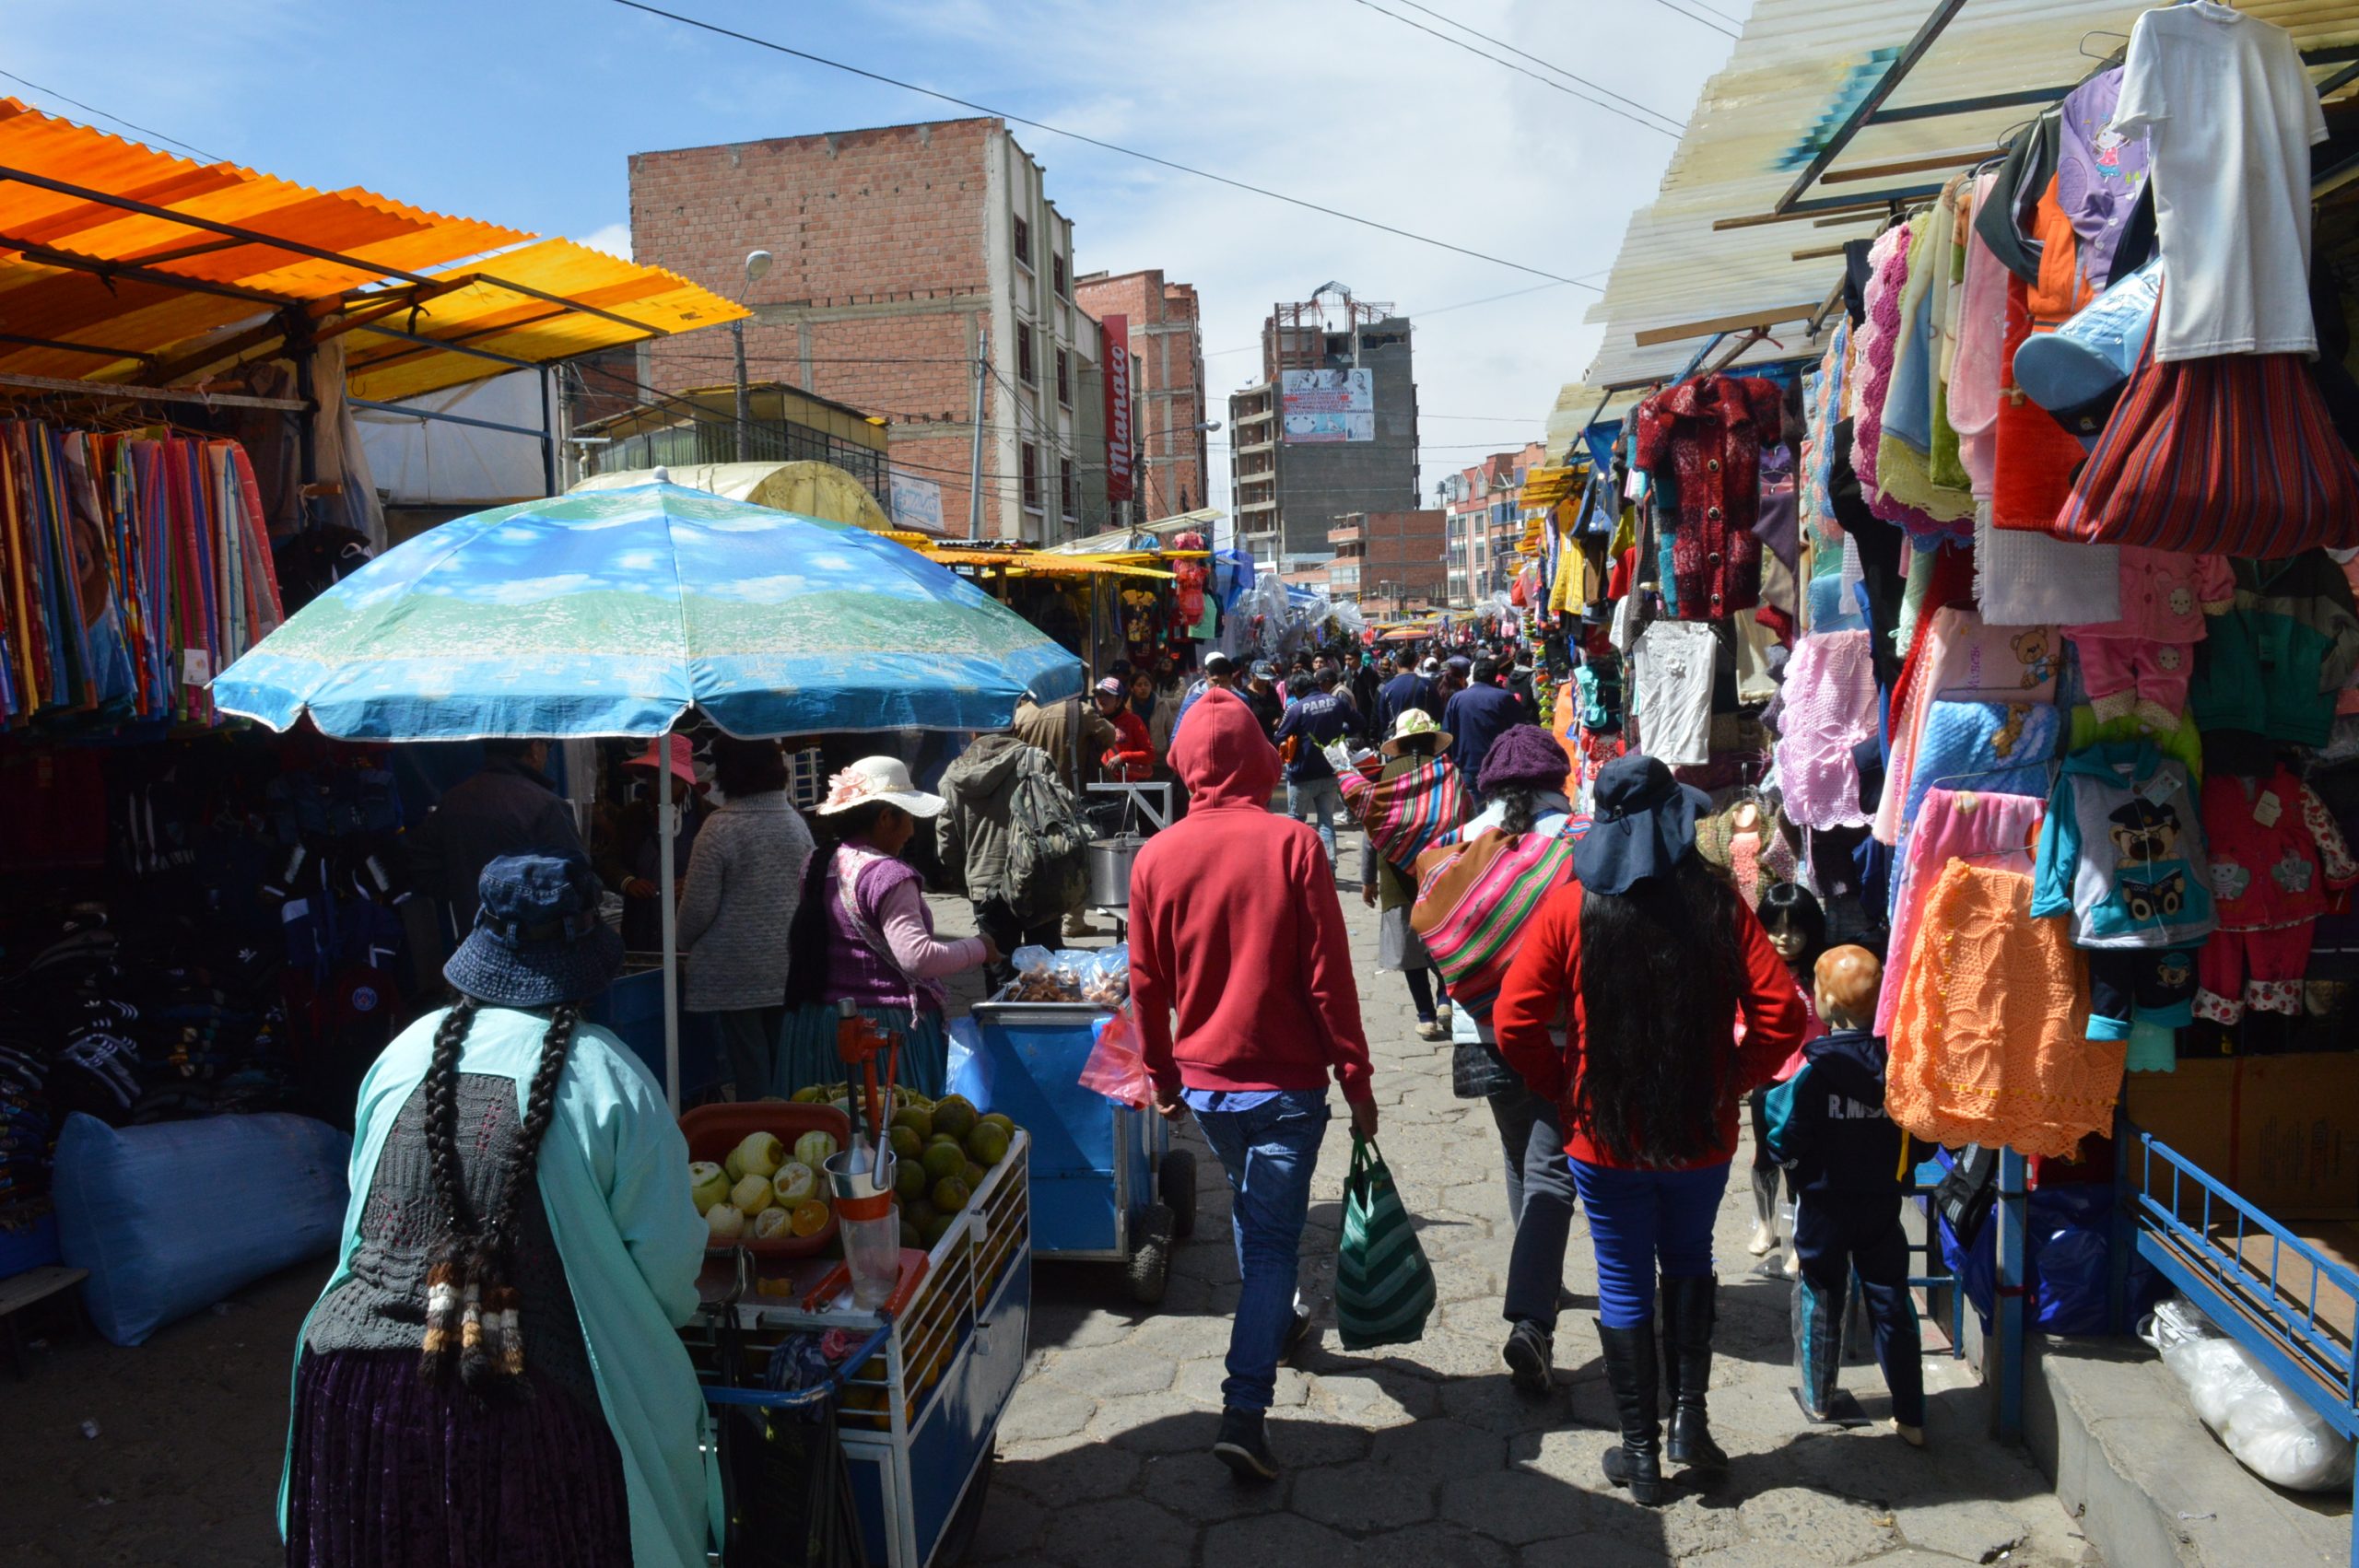 Copa excluye cierre sanitario en ciudad de El Alto